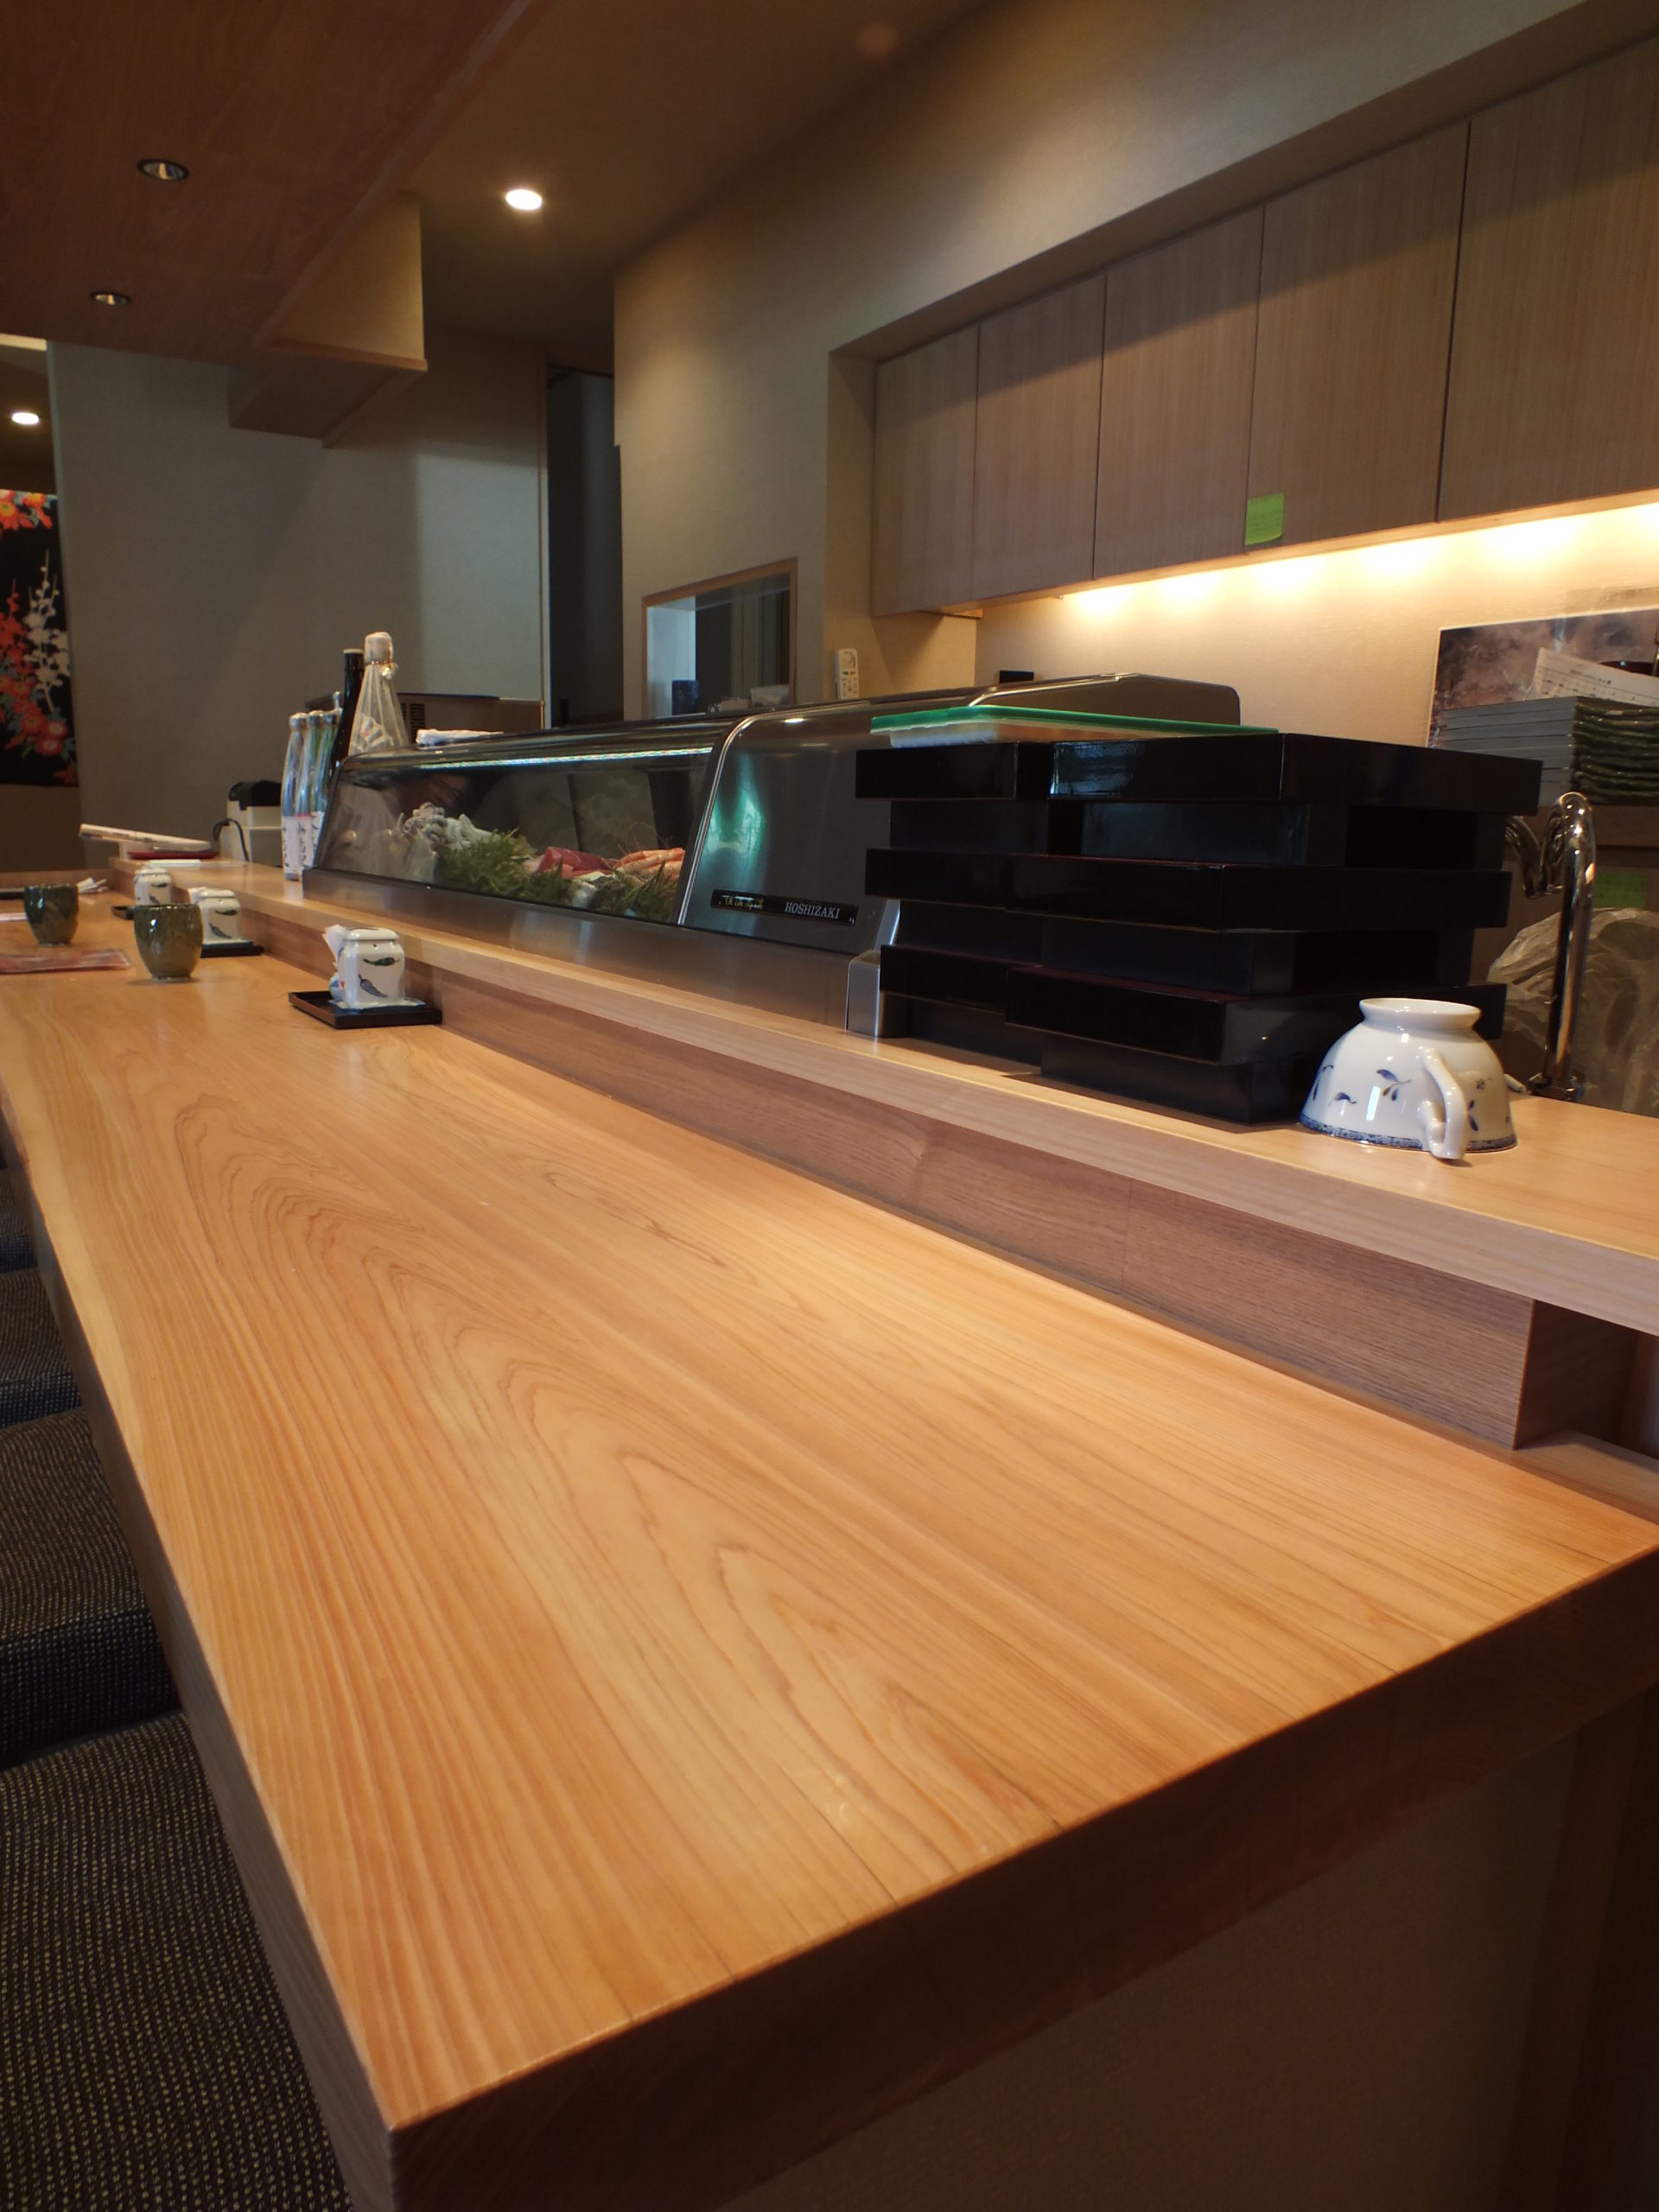 寿司店のカウンター【ヒノキ一枚板】 | 無垢材・一枚板などの木材と